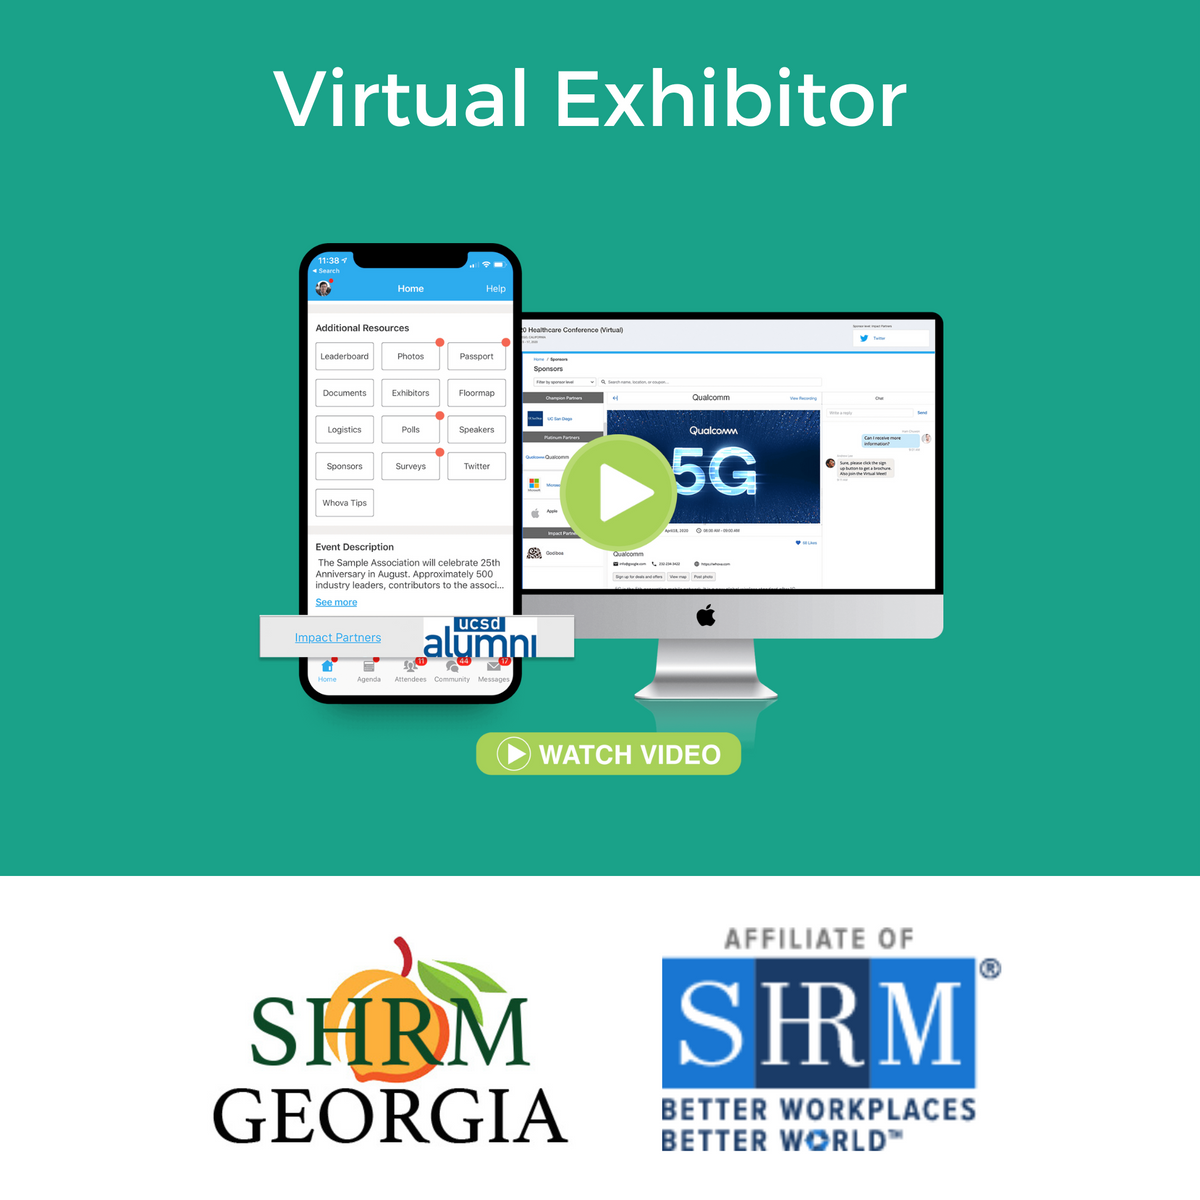 23 GA SHRM Annual - Virtual Exhibitor